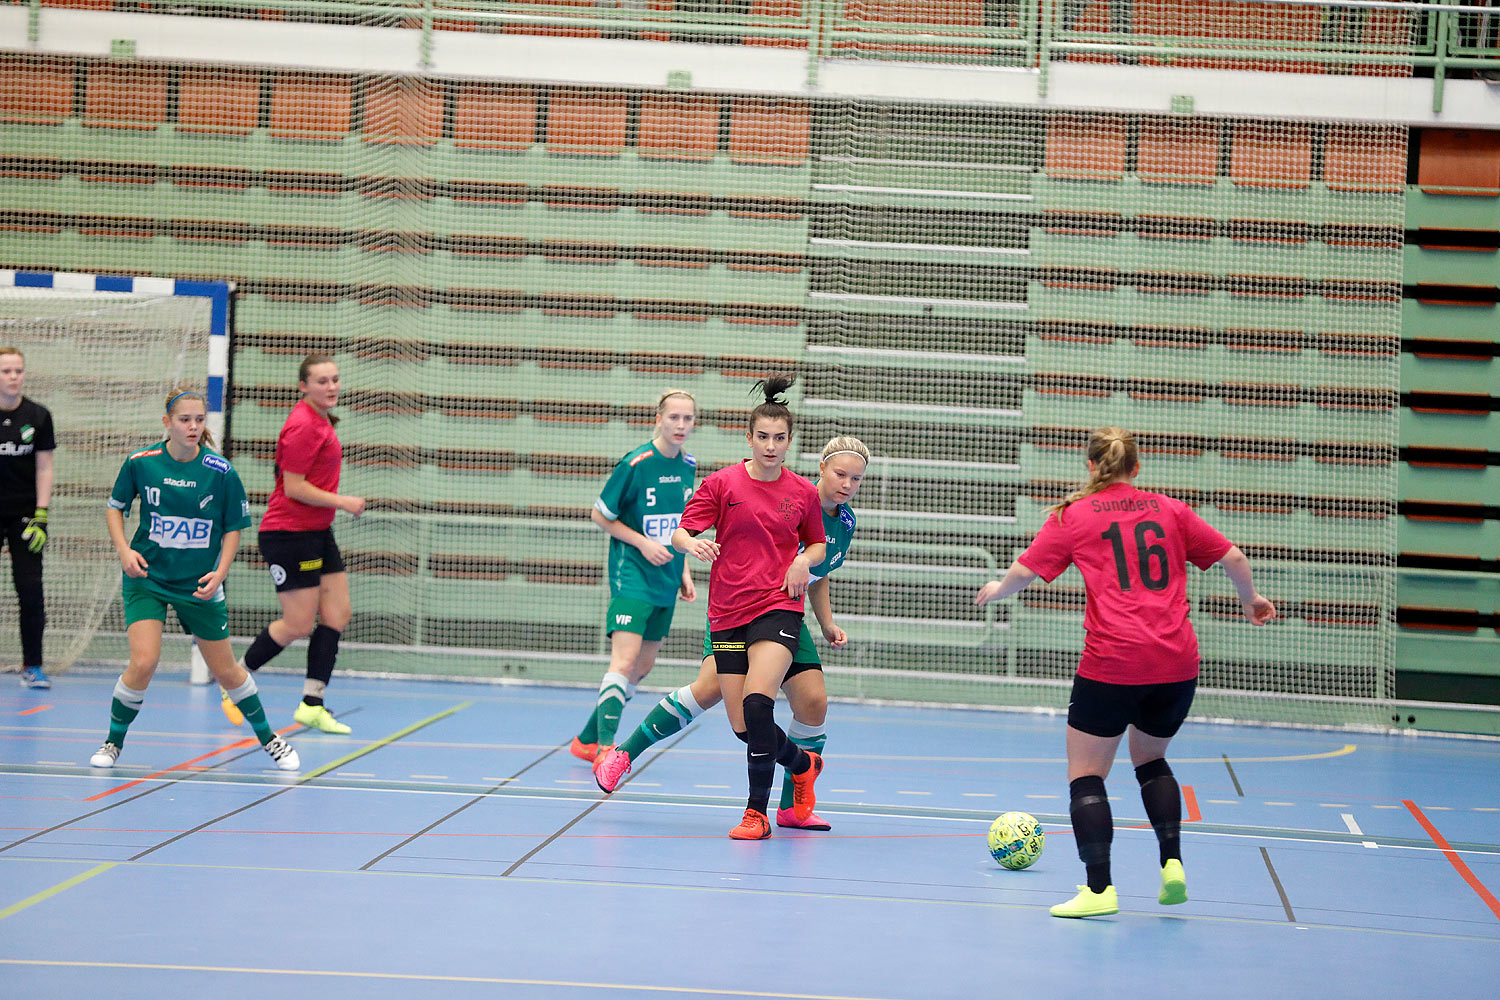 Skövde Futsalcup Damer Falköping Futsal Club-Våmbs IF,dam,Arena Skövde,Skövde,Sverige,Skövde Futsalcup 2016,Futsal,2016,141818